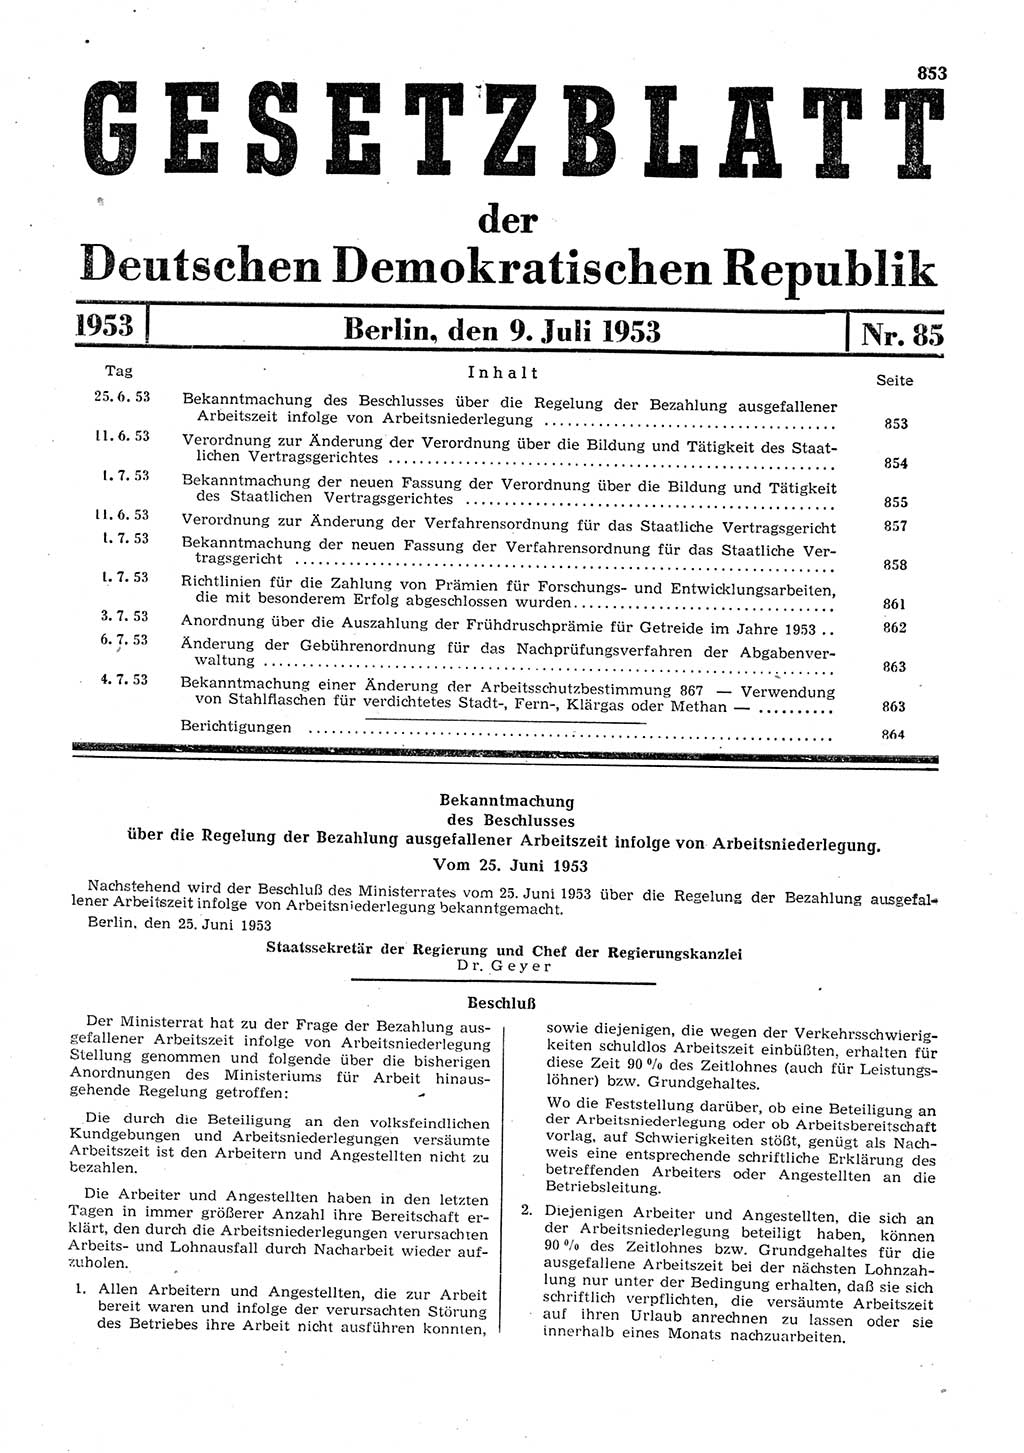 Gesetzblatt (GBl.) der Deutschen Demokratischen Republik (DDR) 1953, Seite 853 (GBl. DDR 1953, S. 853)